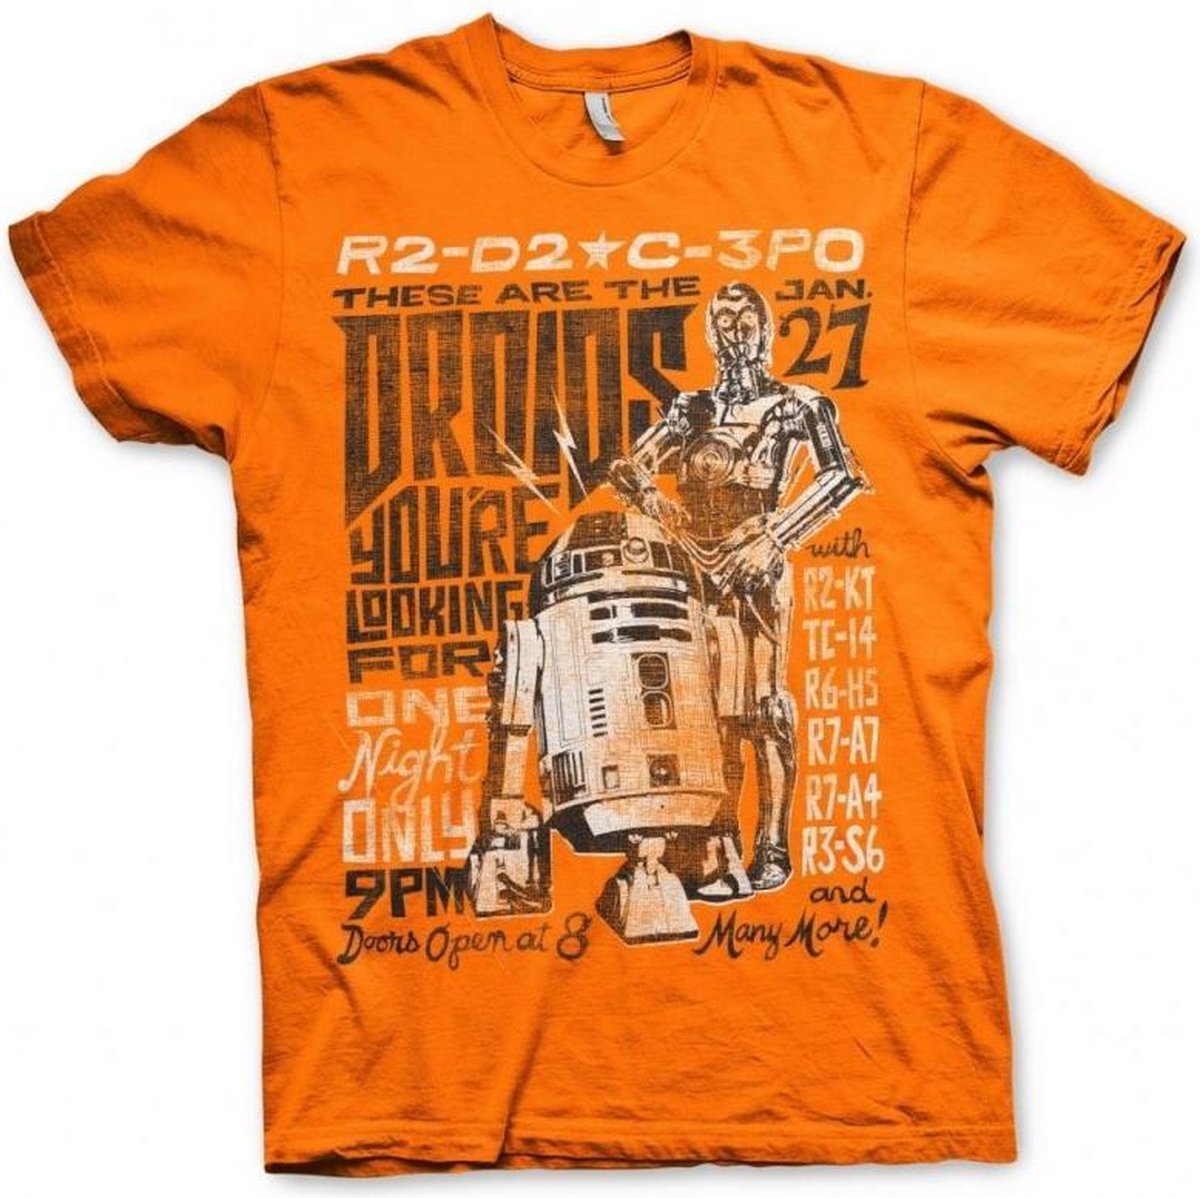 STAR WARS 7 - T-Shirt Droids Night - Orange (L)